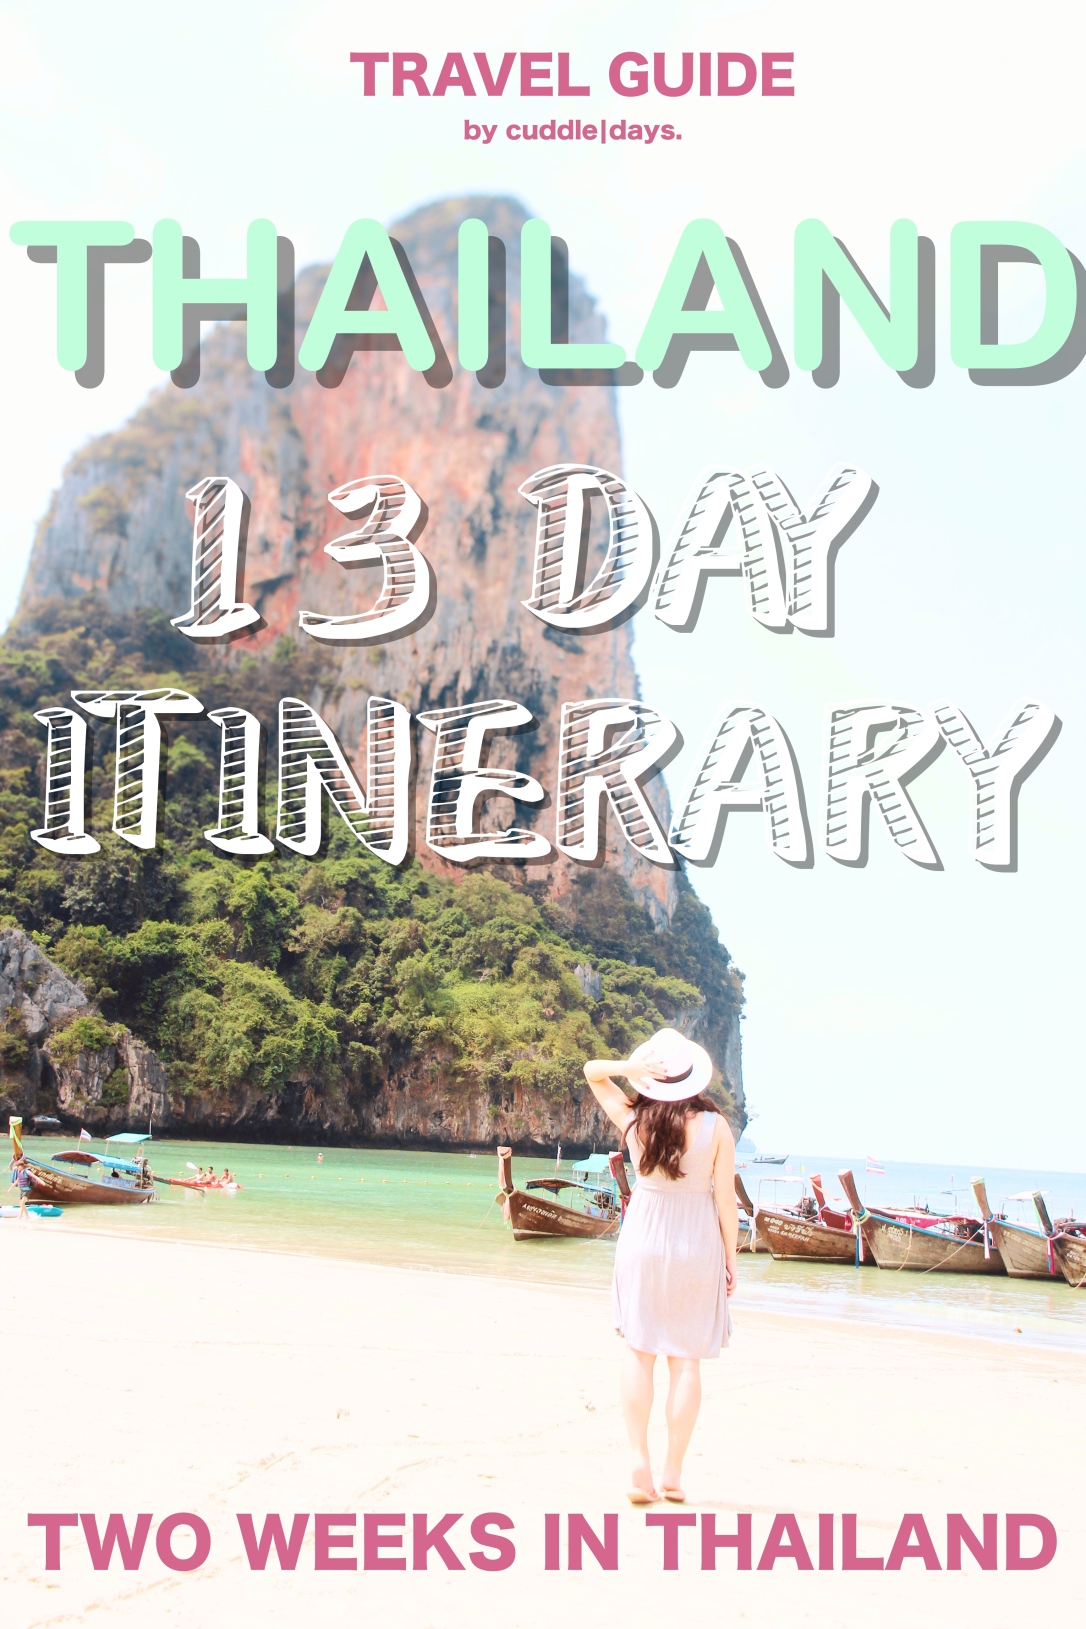 THAILAND ITINERARY